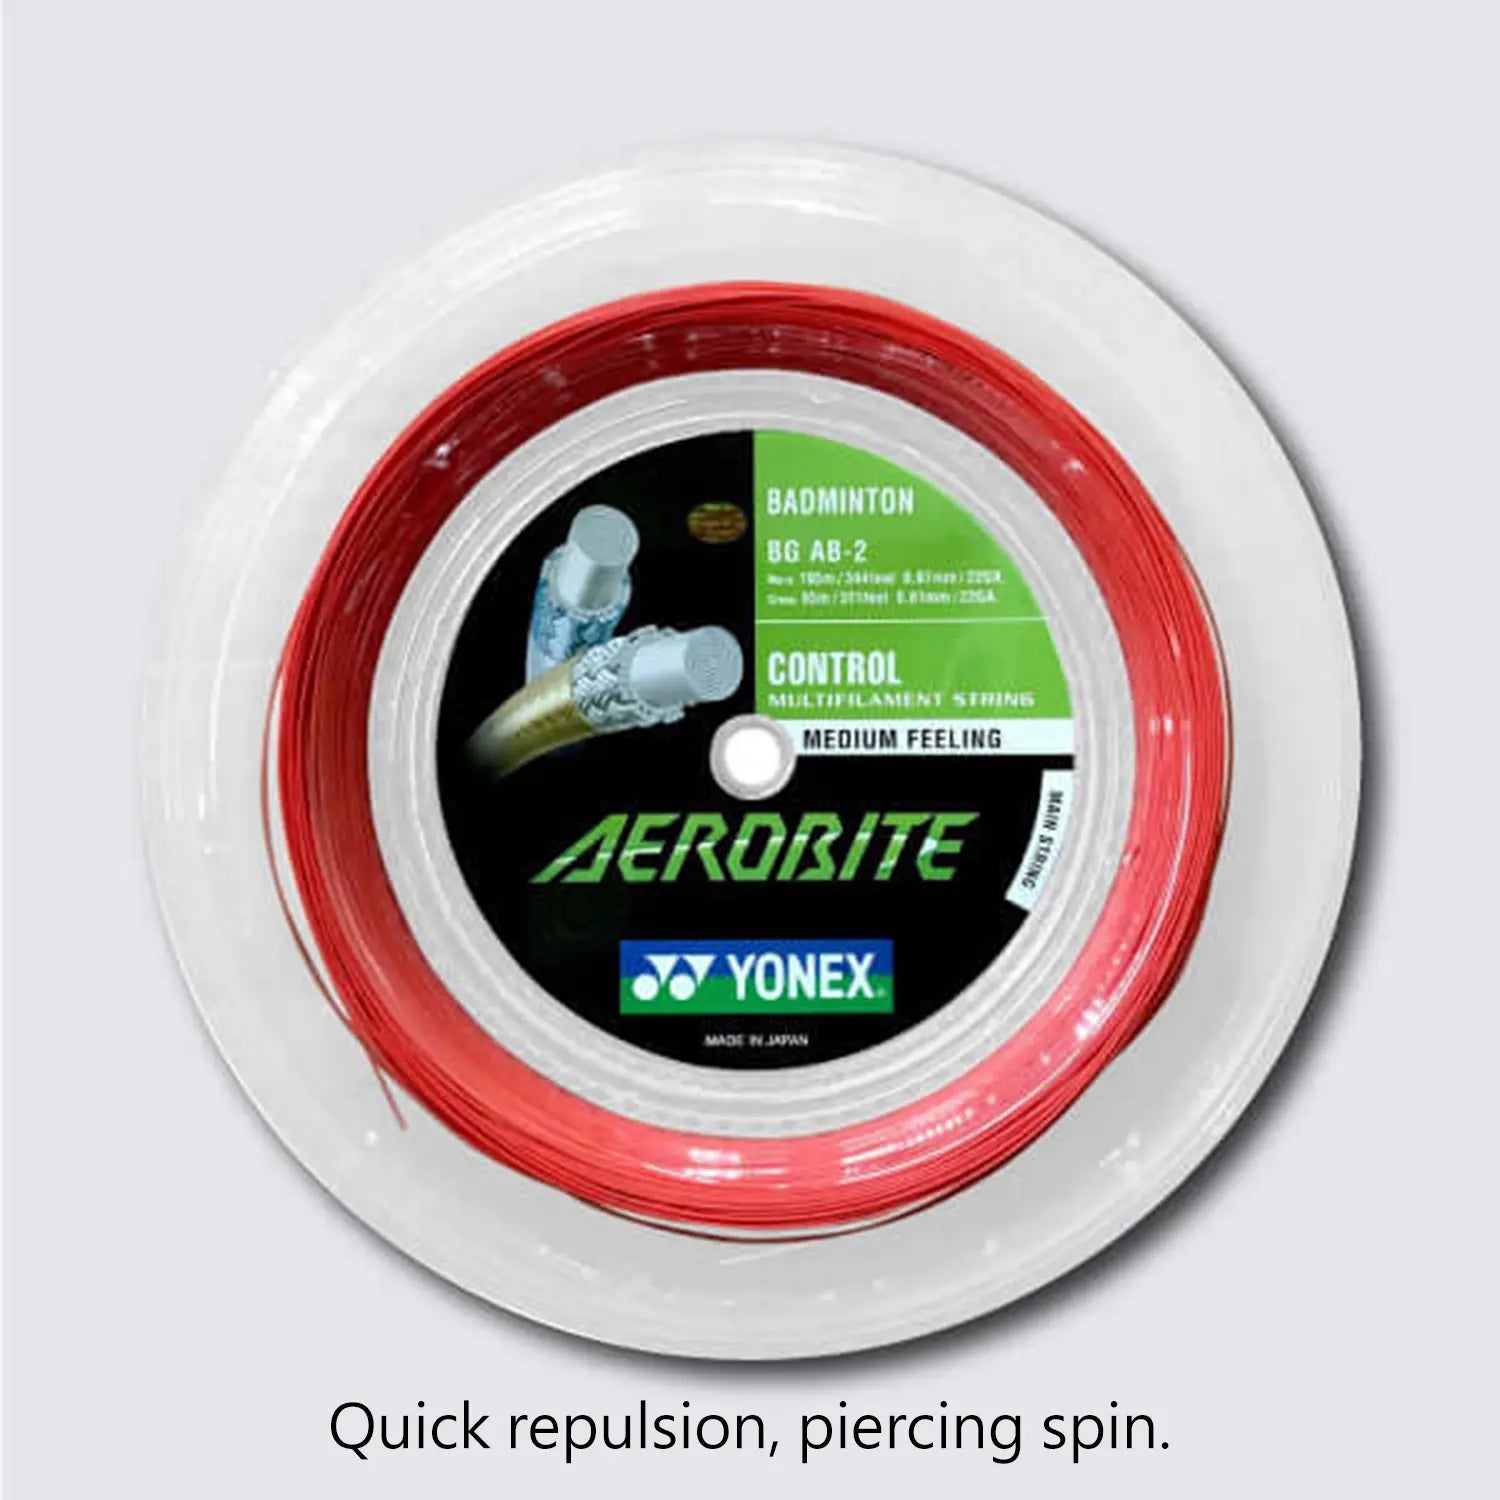 Yonex Aerobite 200m Badminton String (White / Red) 